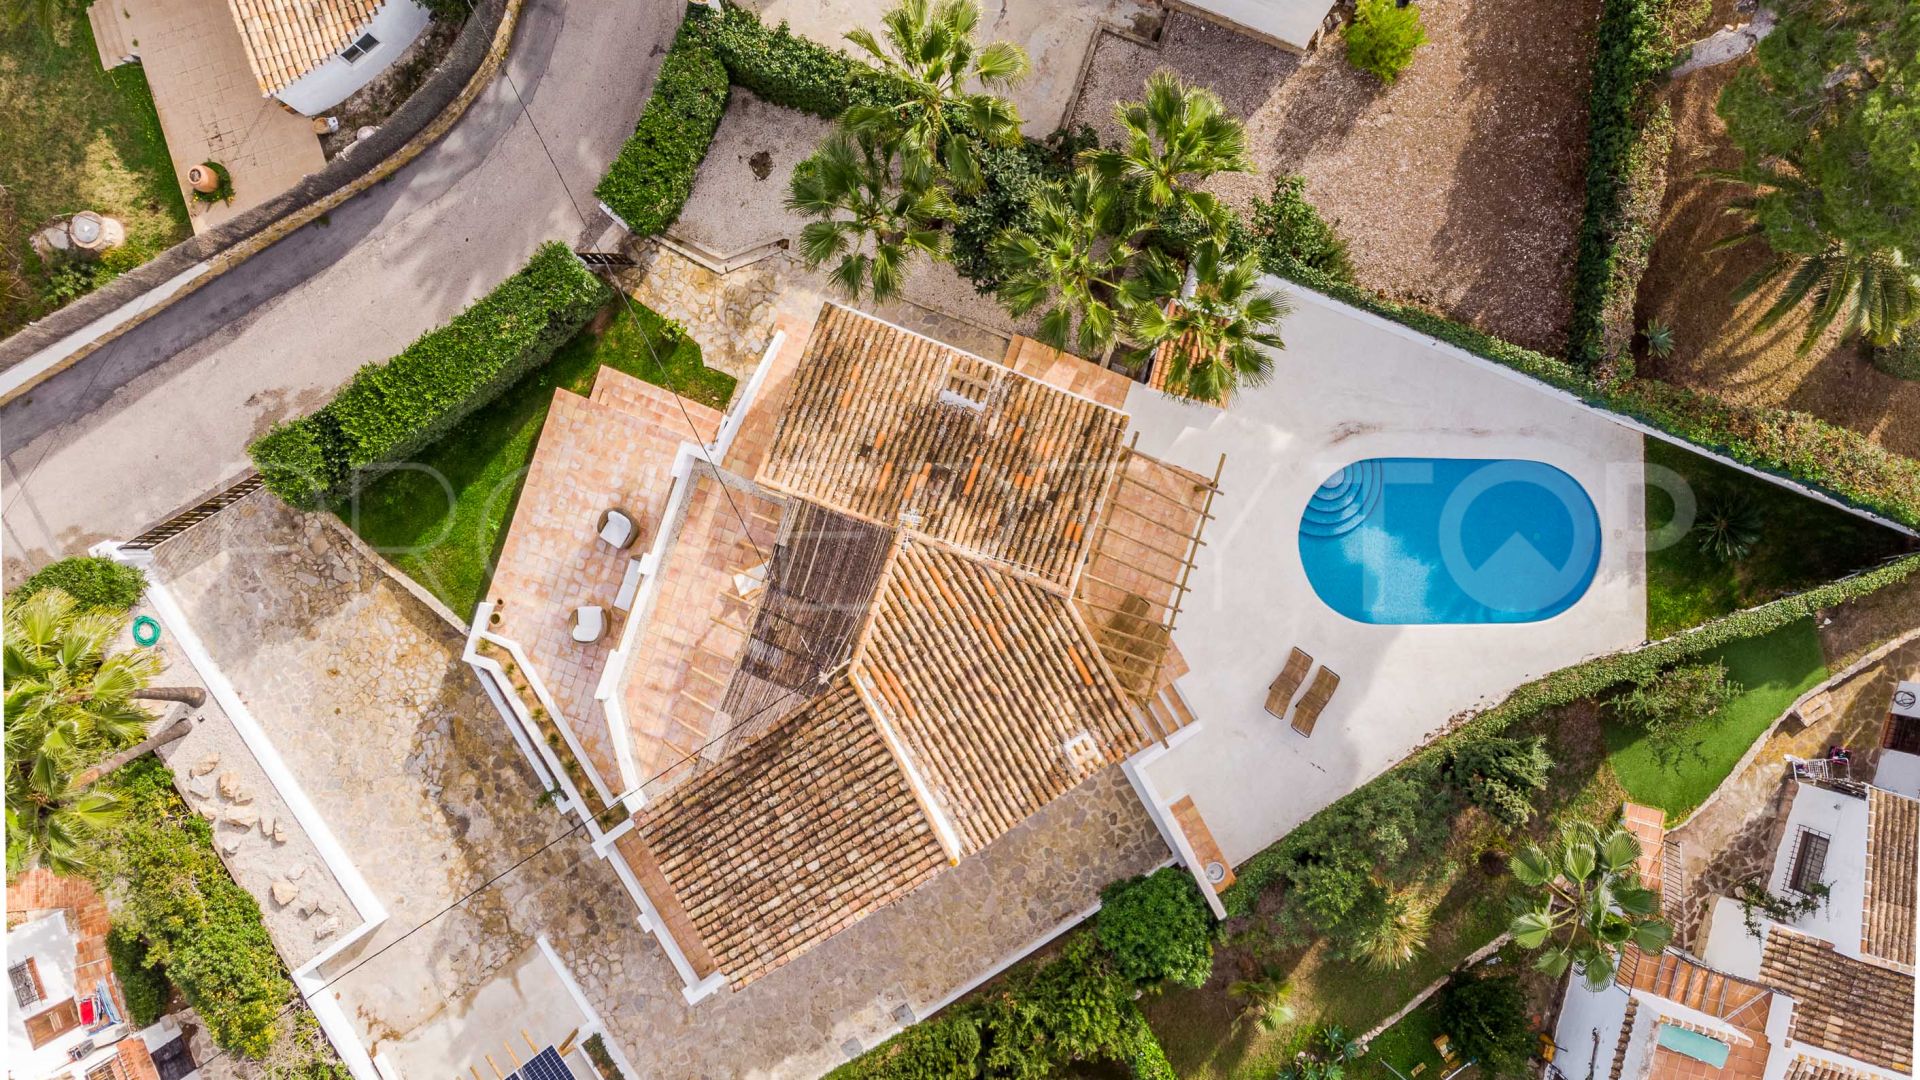 Buy Cap Marti villa with 4 bedrooms